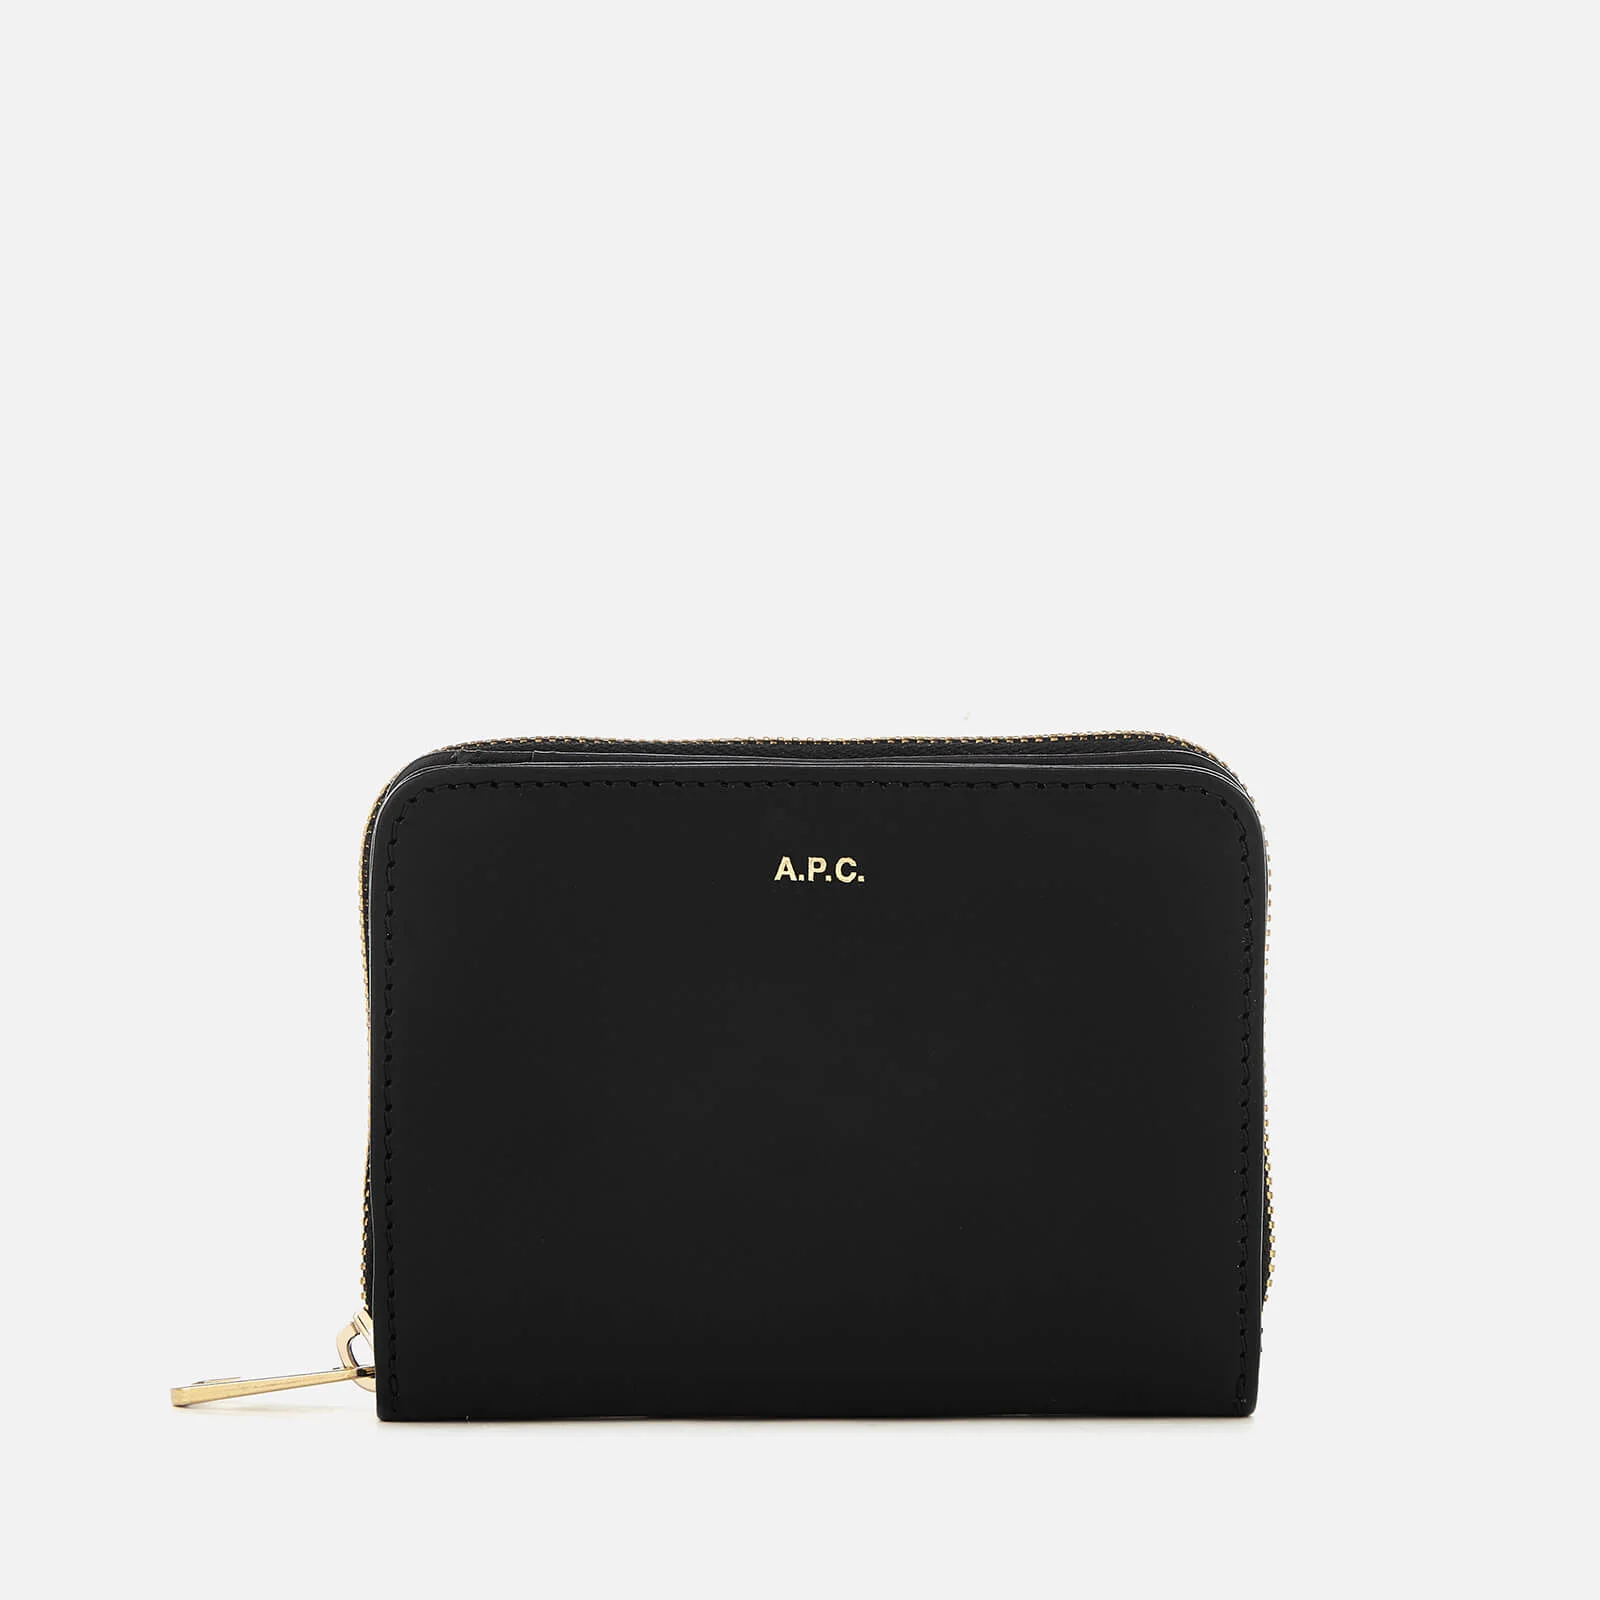 A.P.C. Women's Emmanuelle Compact Wallet - Black Image 1